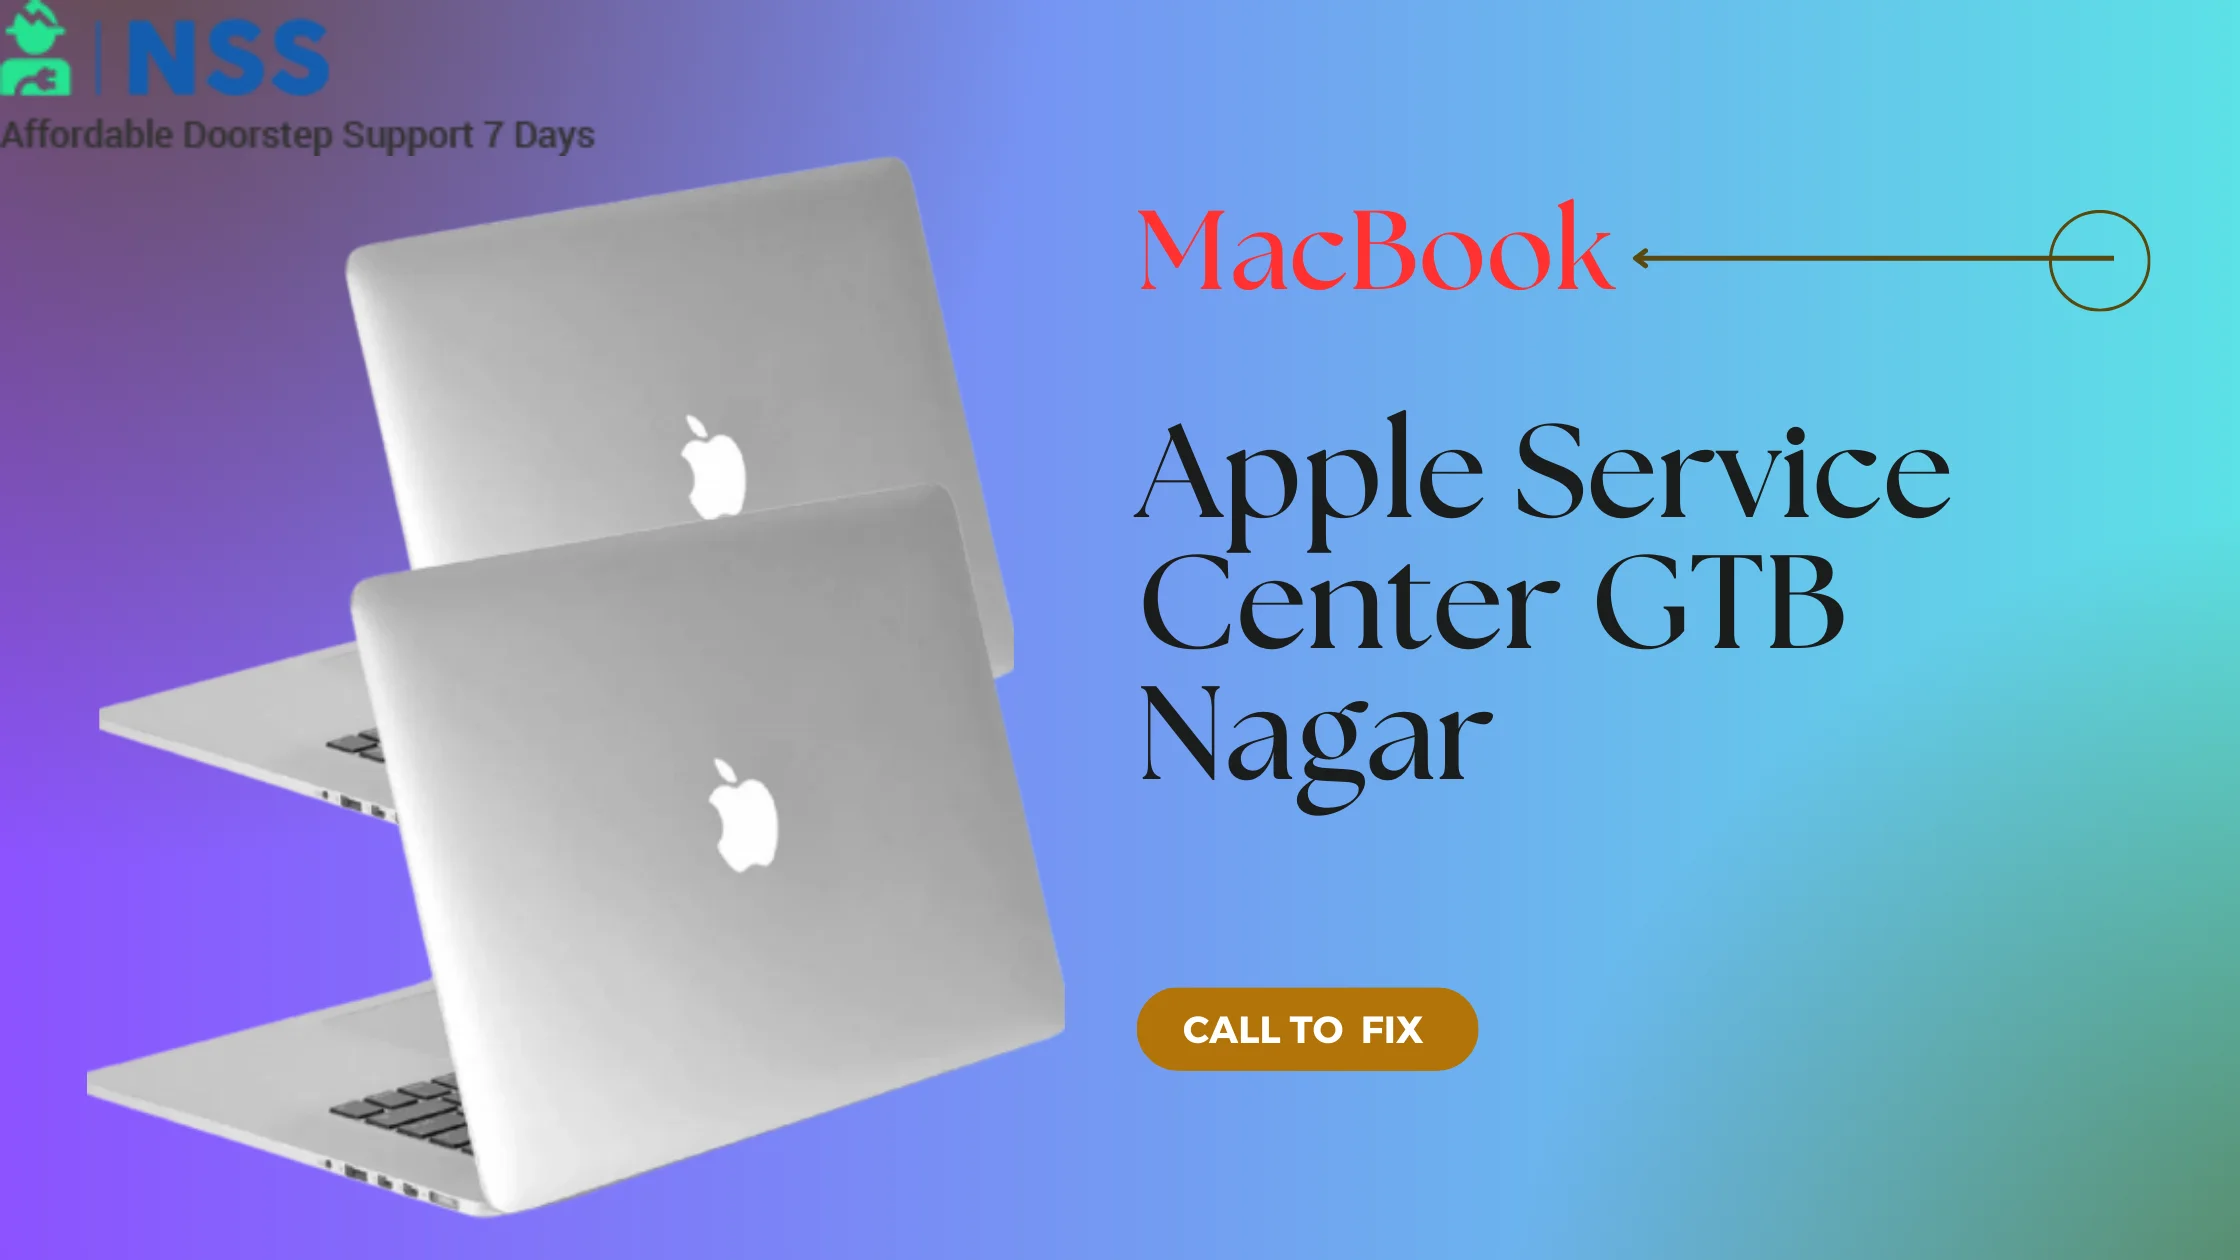 Apple Service Center in GTB Mukherjee Nagar, Delhi